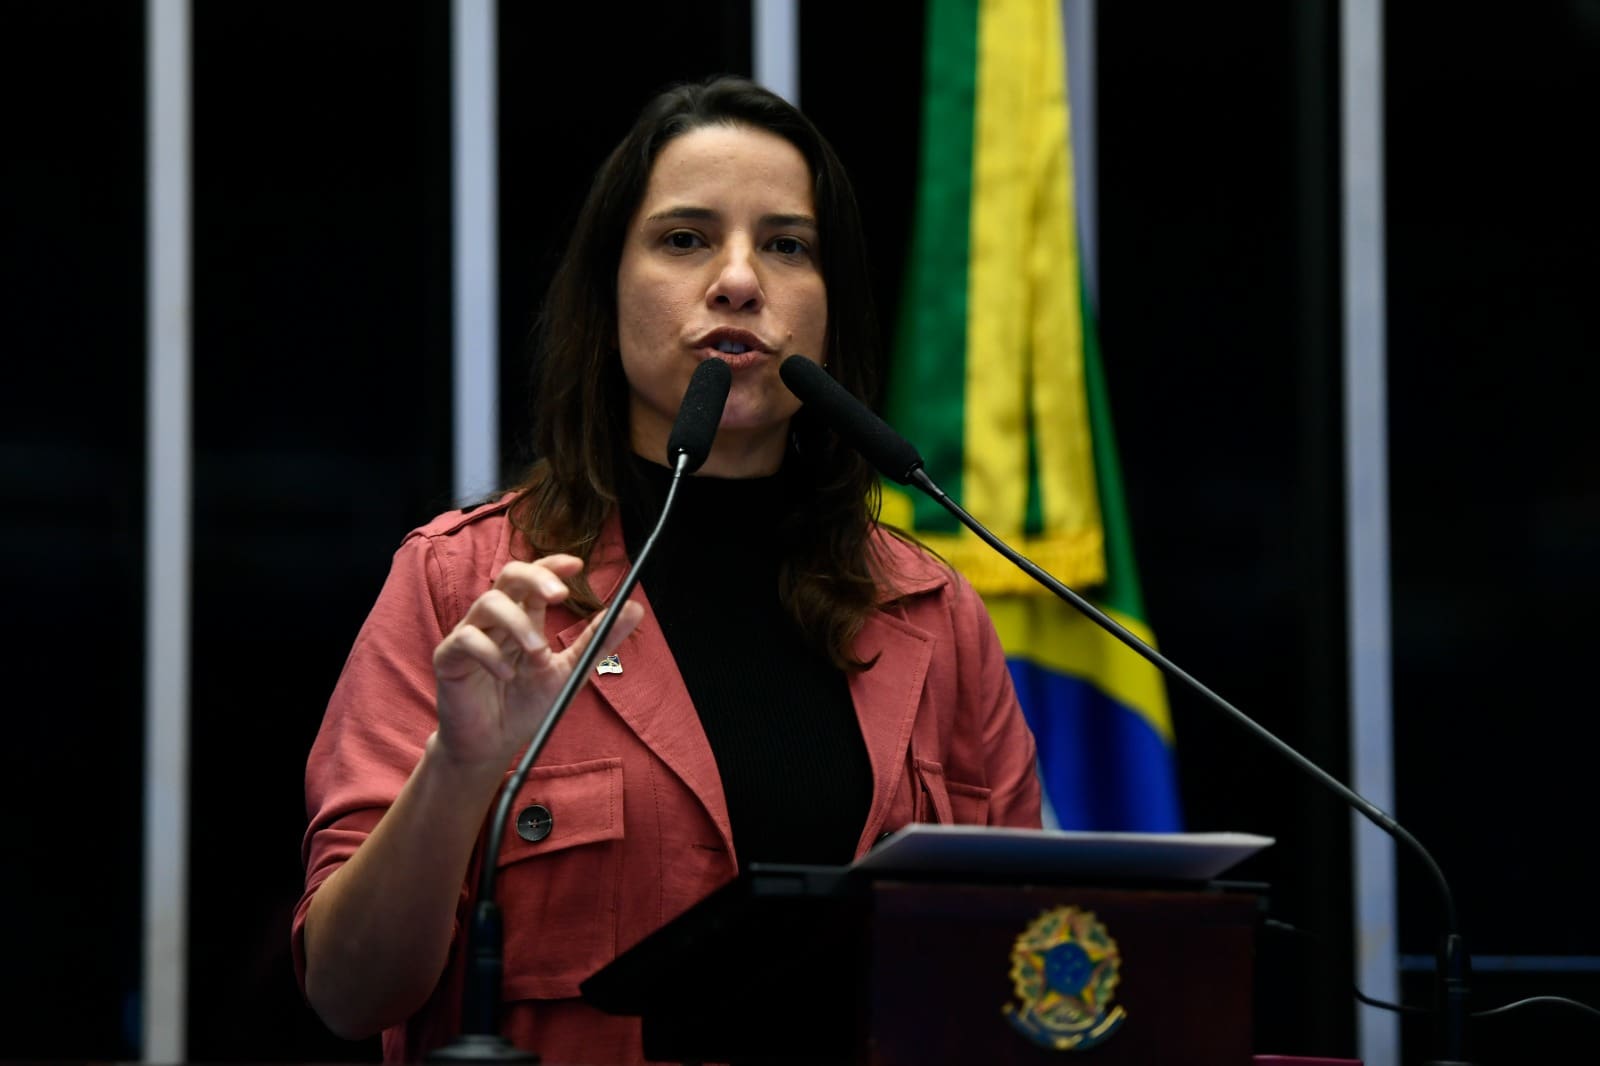 Governadores reforçam críticas de Caiado à Reforma Tributária no Senado- Raquel Lyra, governadora de Pernambuco